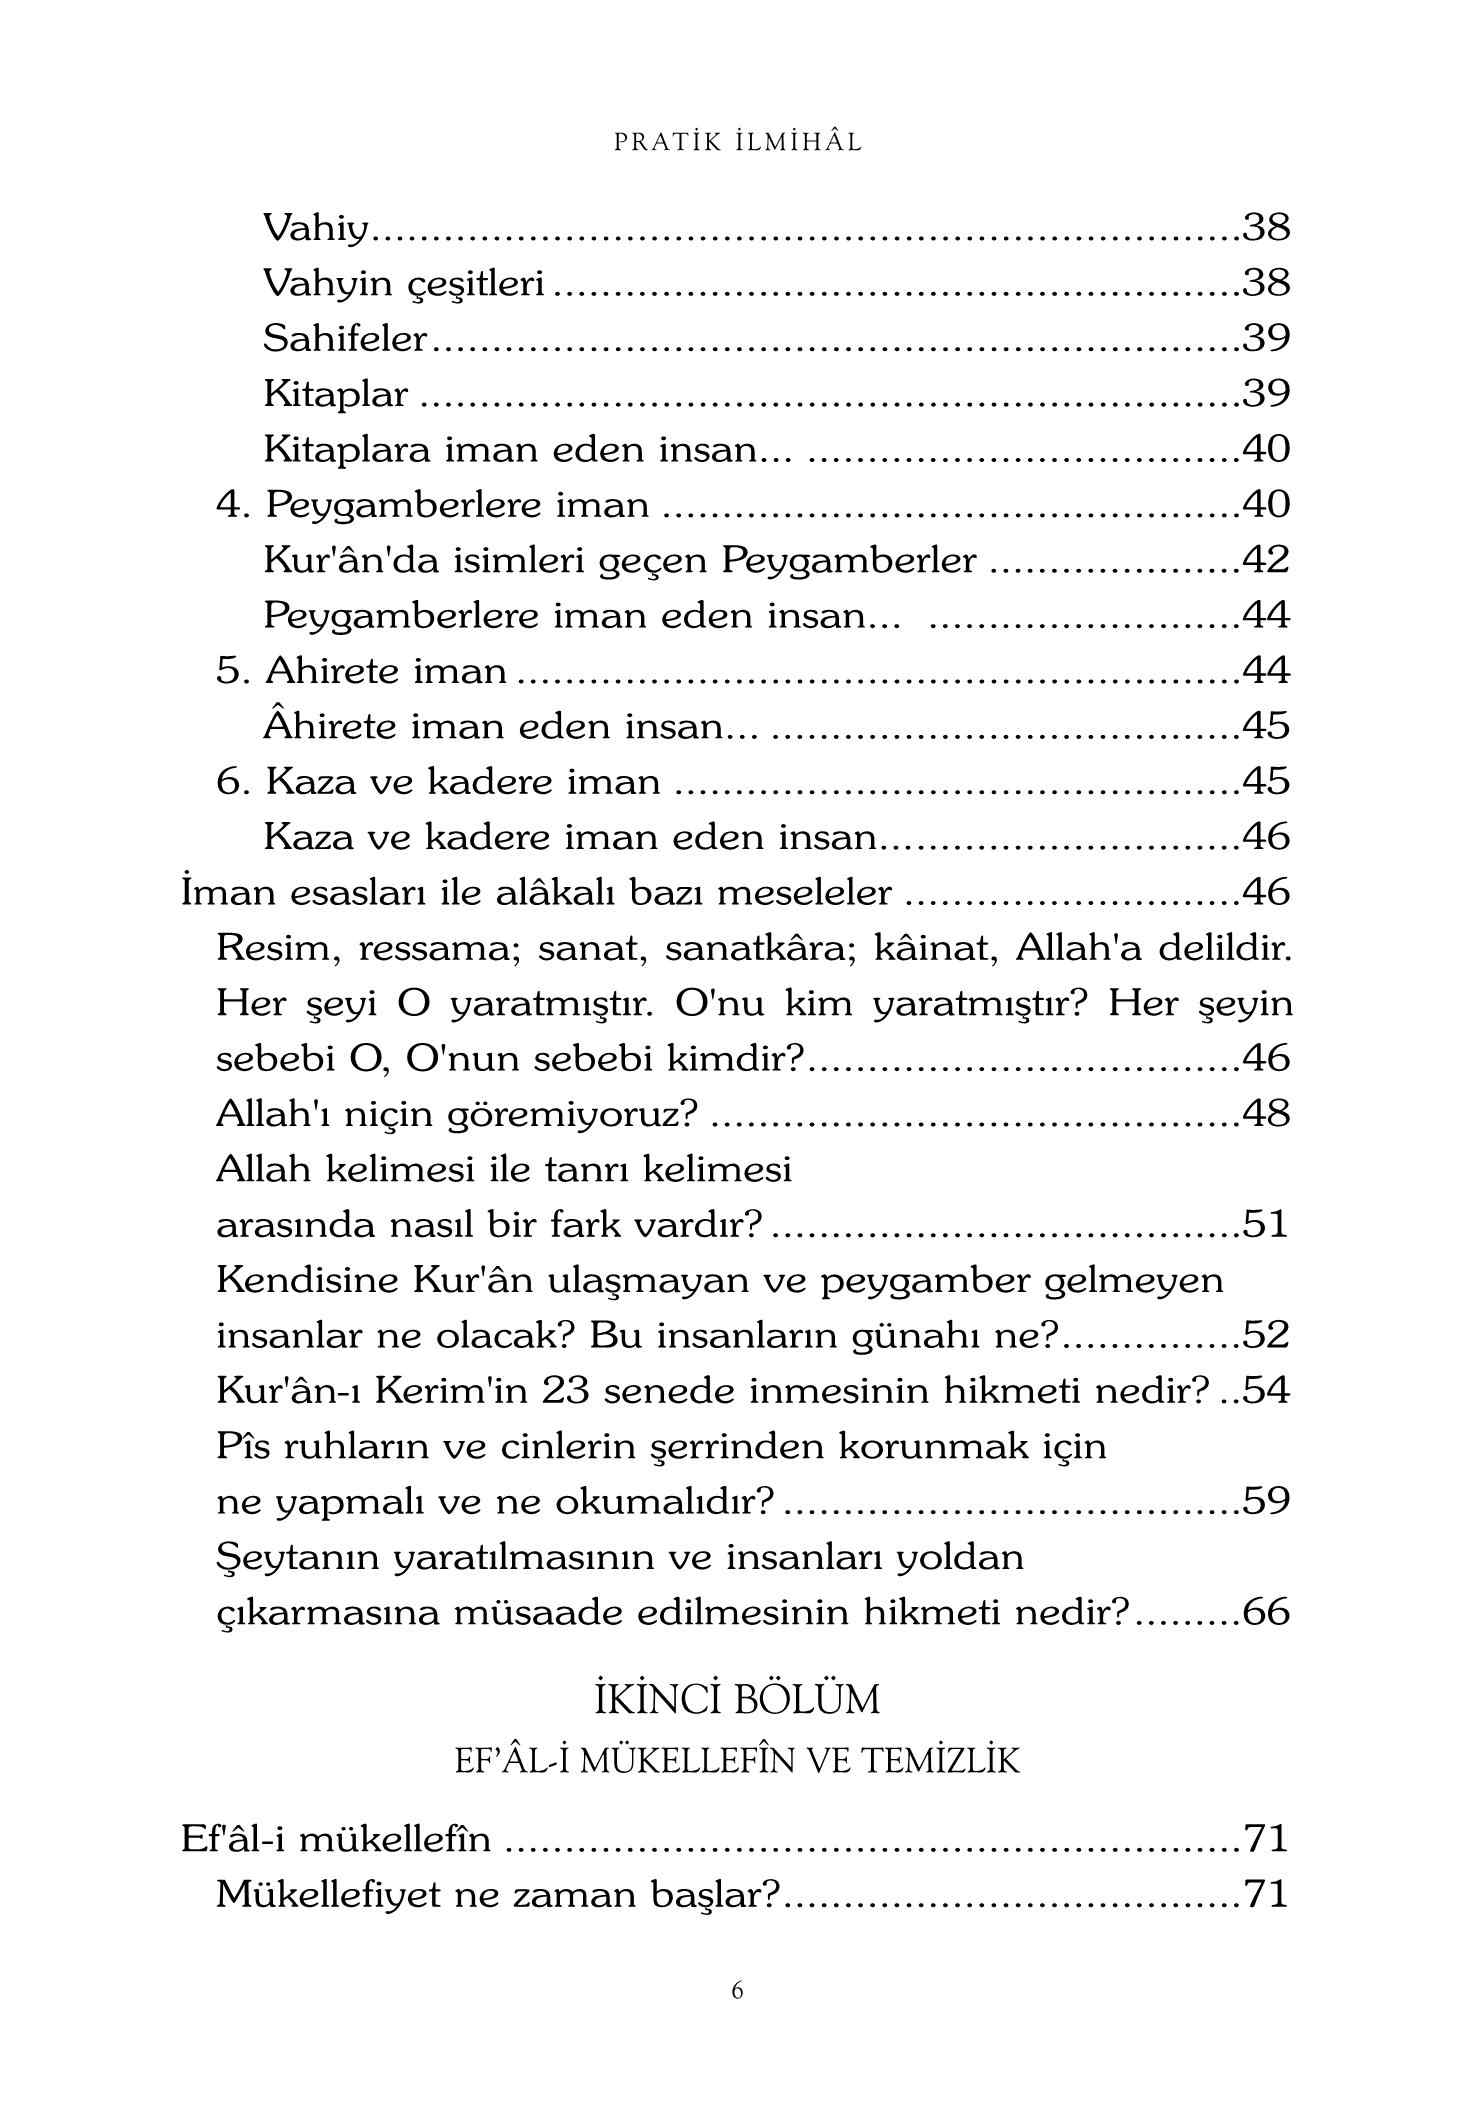 Cep Ilmihali Serisi - Osman Bilgen - Pratik ilmihal - RehberYayinlari.pdf, 217-Sayfa 